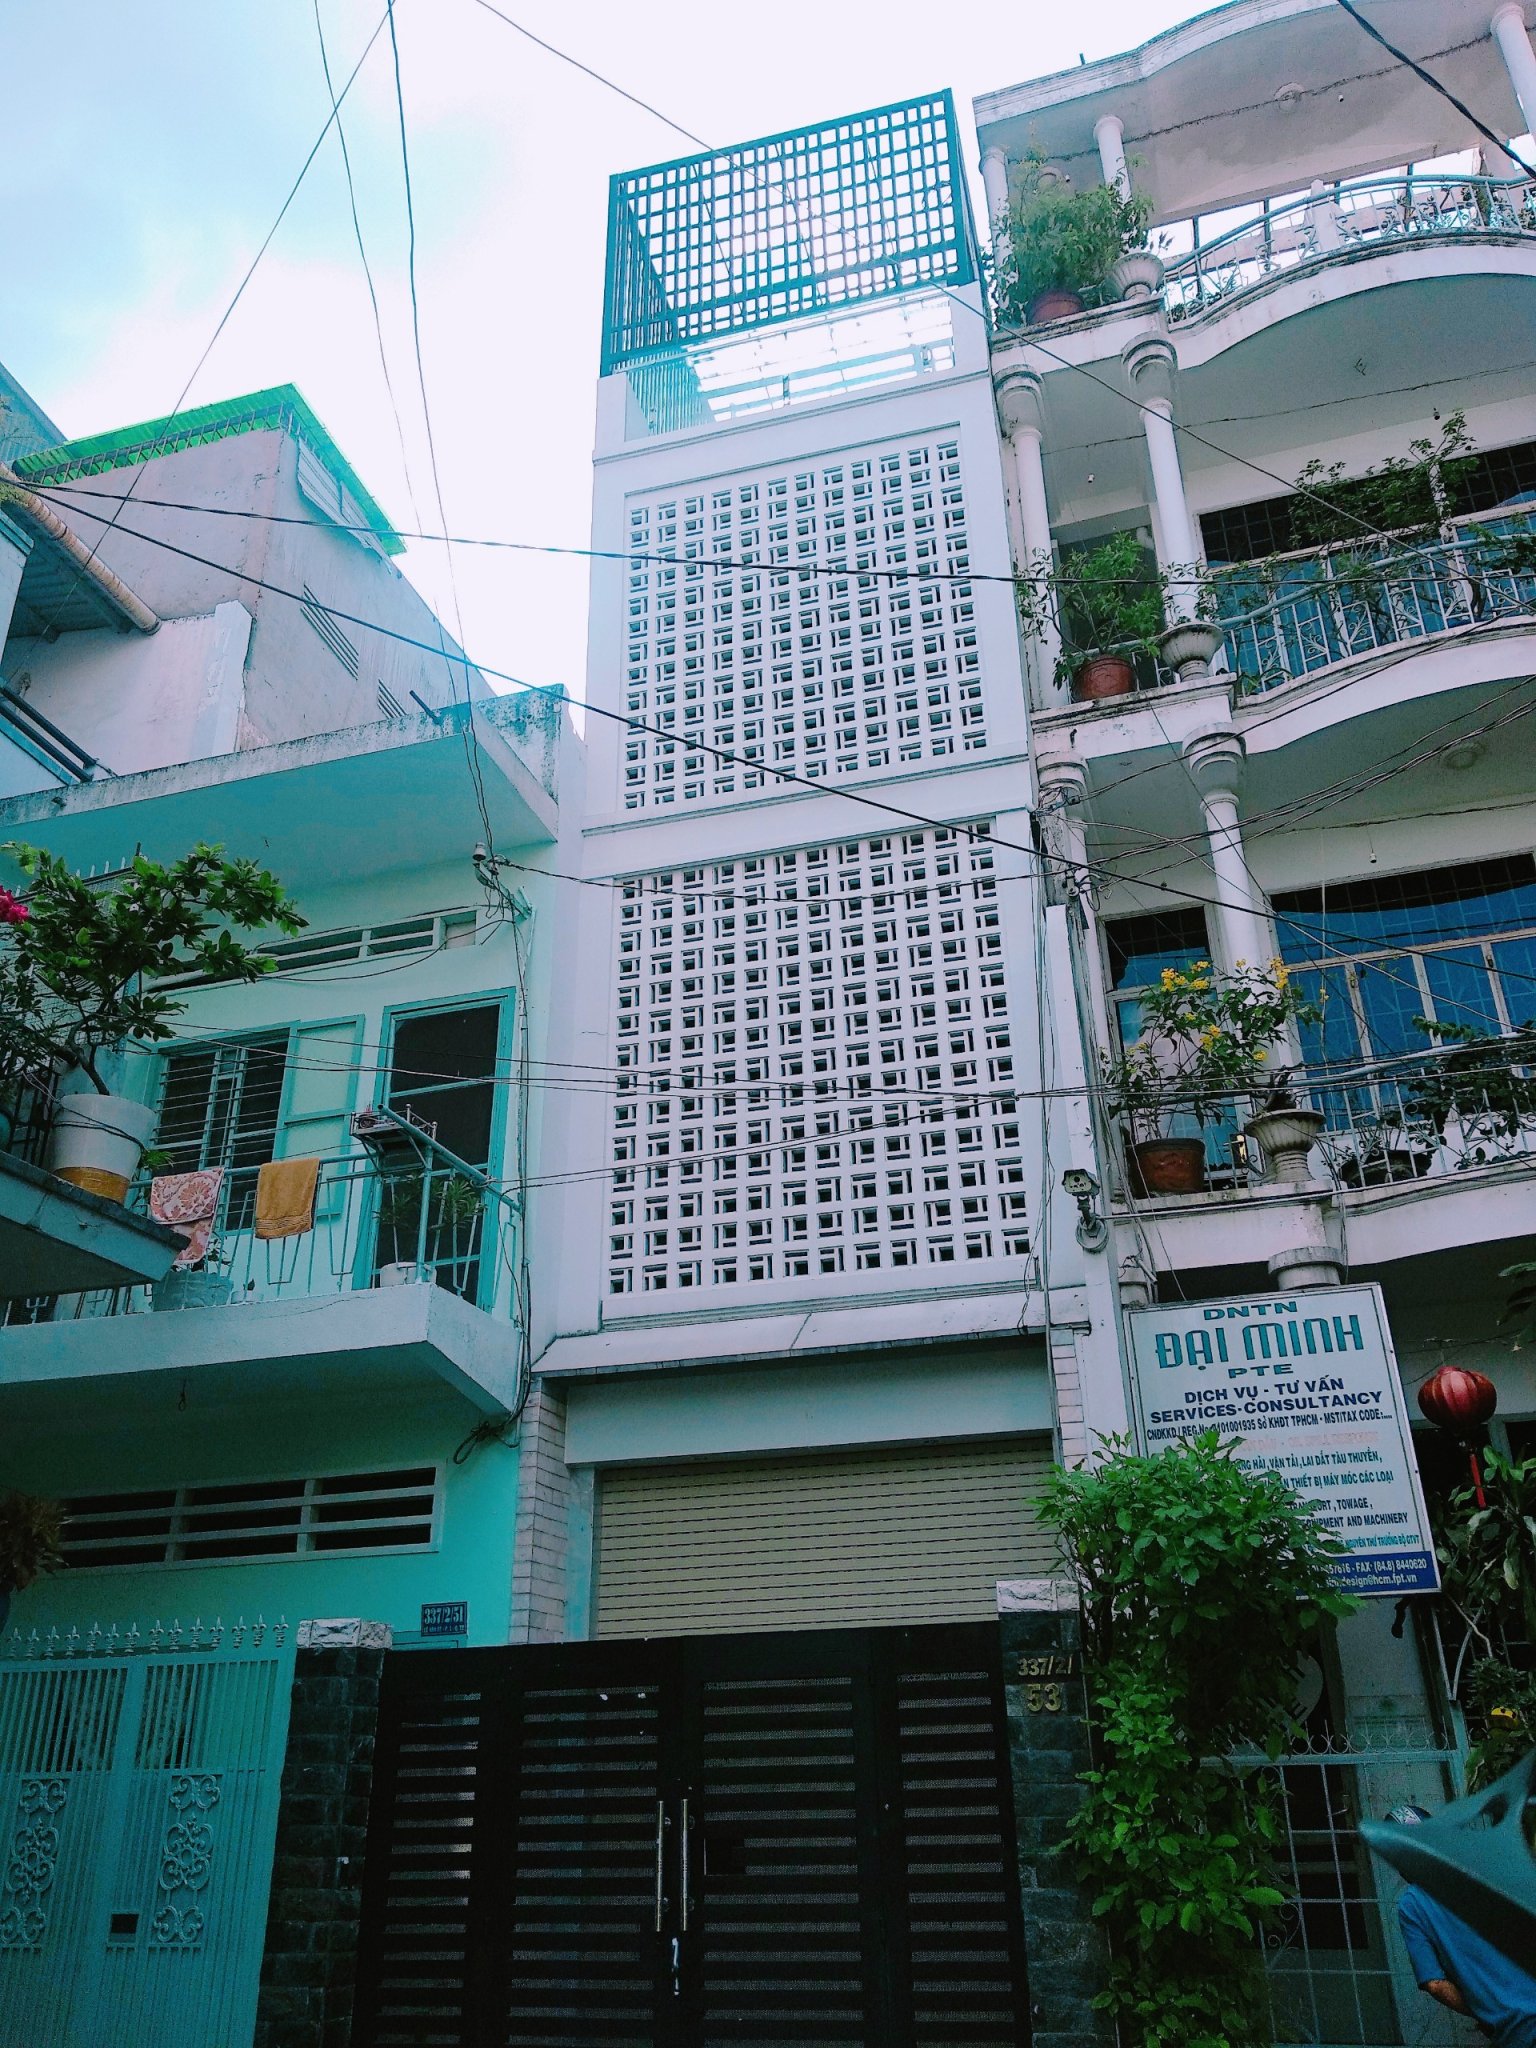 Cần bán nhà mặt tiền đường Đất Thánh, phường 6, quận Tân Bình. DT: 6x24m, giá 20 tỷ